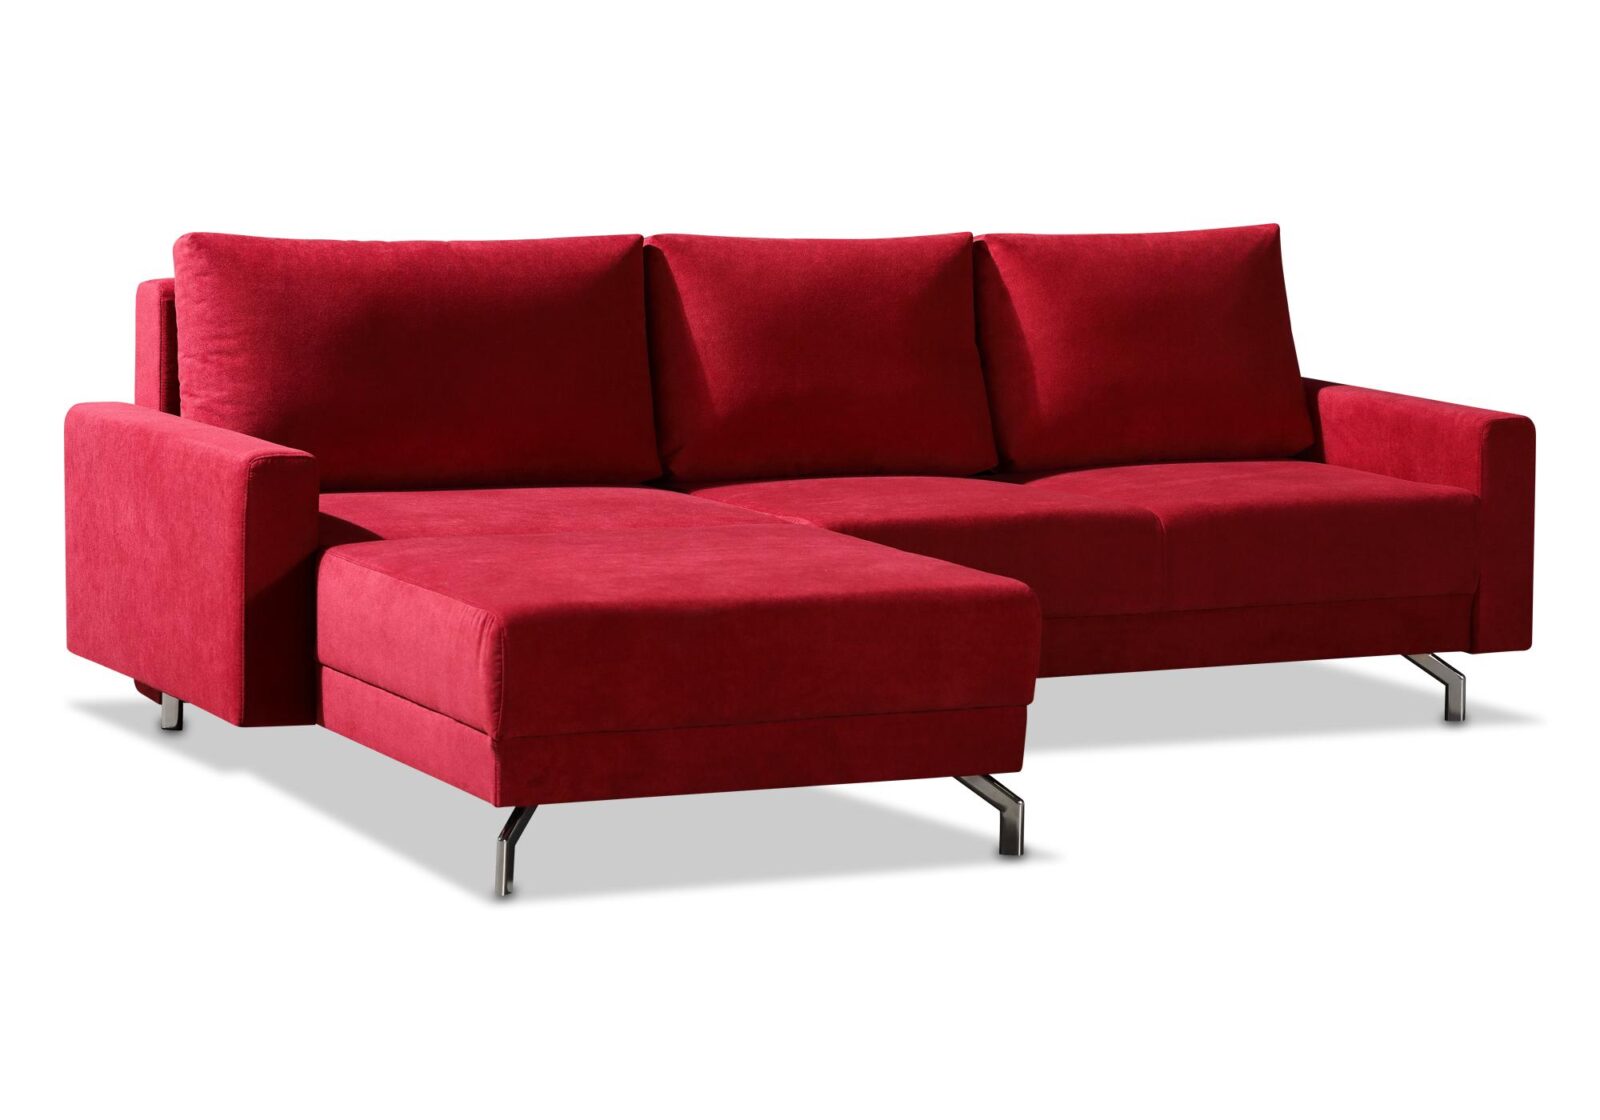 Bettsofa Clivia mit Chaiselongue. Bezug: Stoff. Farbe: Rot. Erhältlich bei Möbel Gallati.